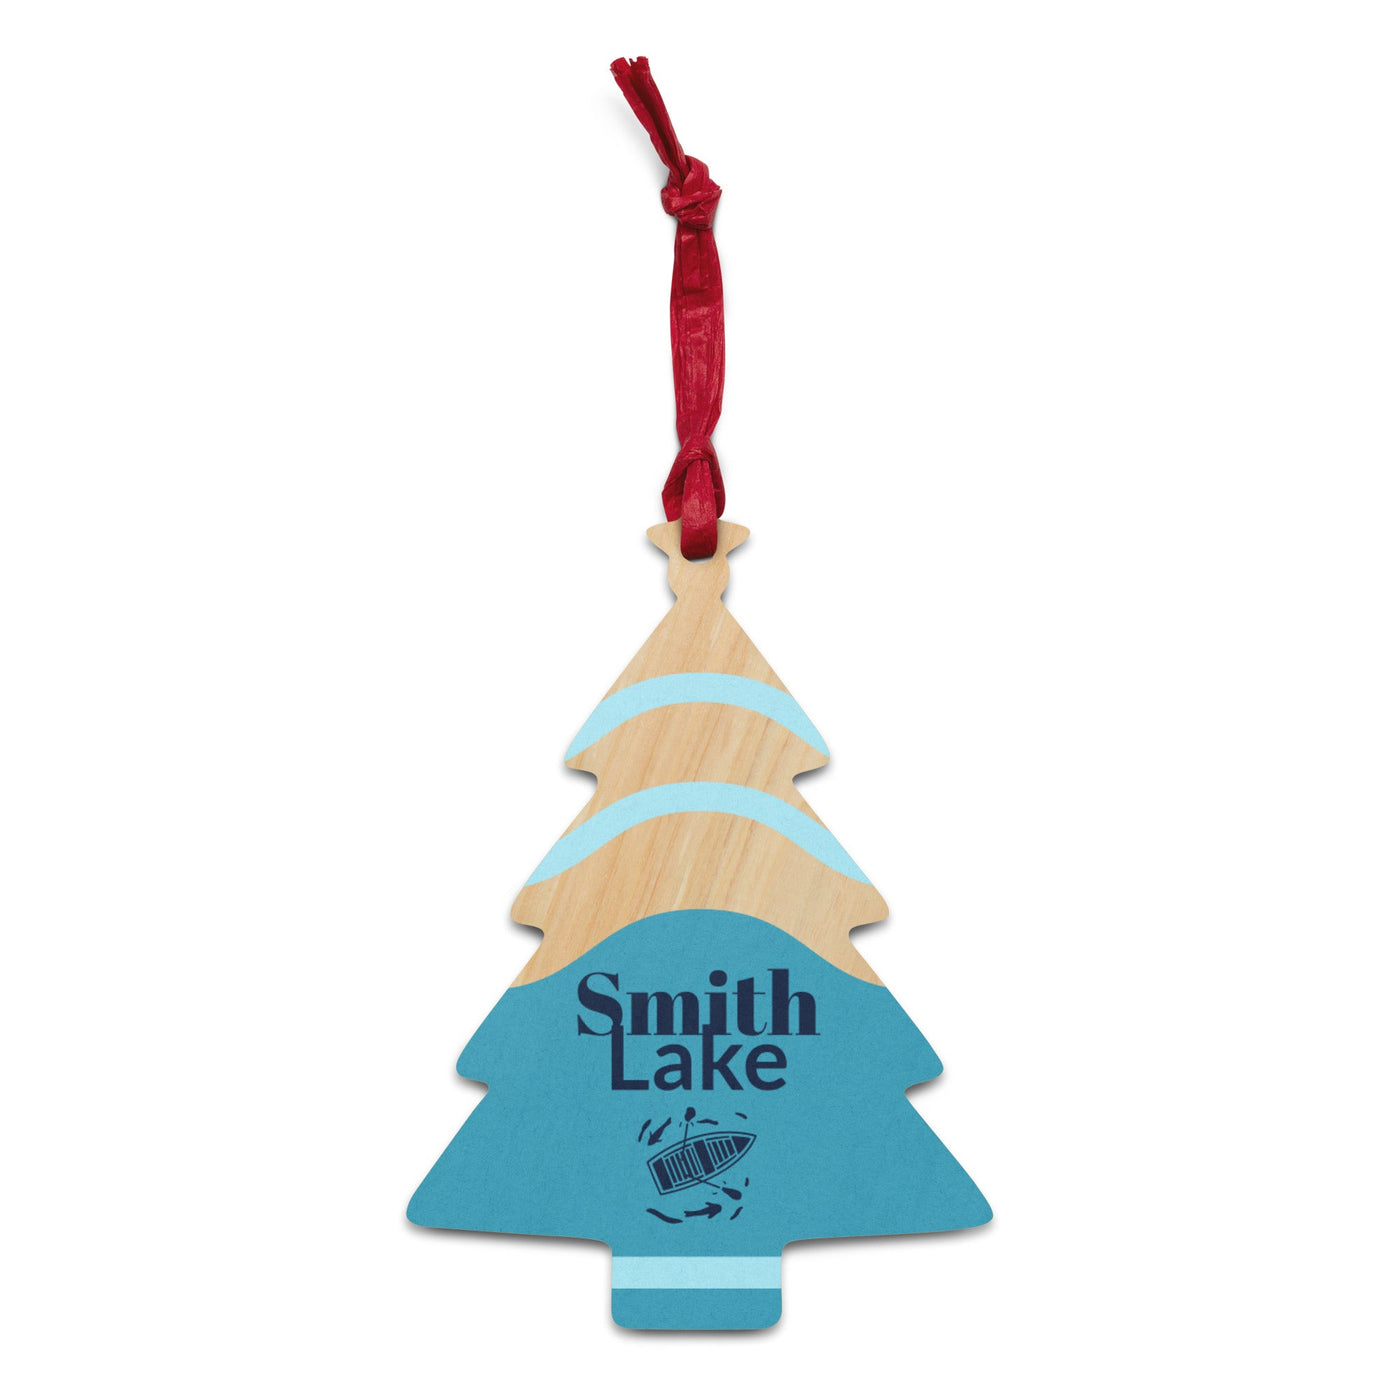 Smith Lake Wooden Ornament - Ezra's Clothing